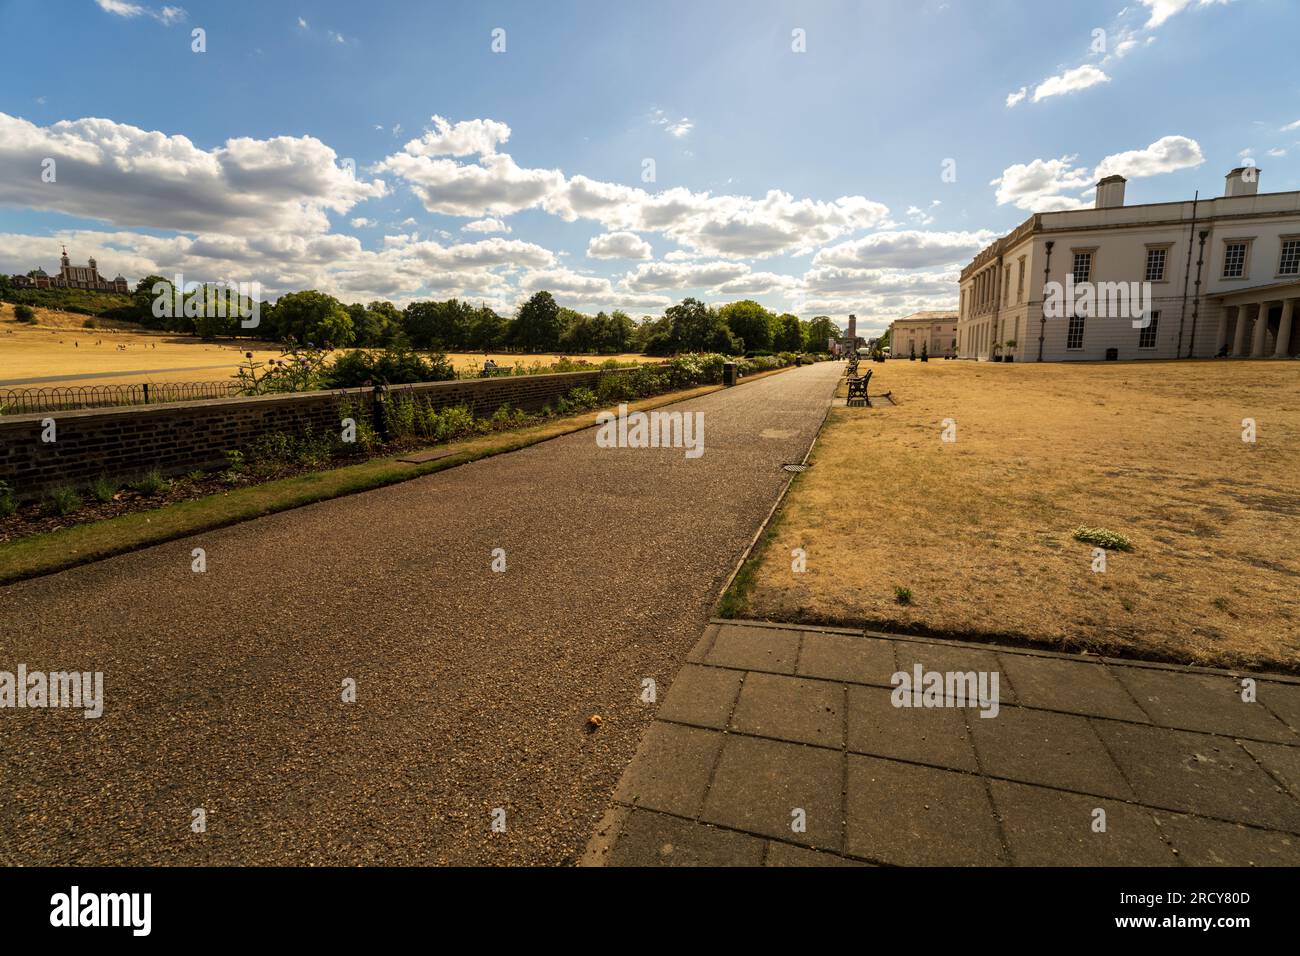 Blick auf das Royal Observatory vom Greenwich Park. Heimat der Greenwich Mean Time und des Prime Meridian der Welt. Greenwich Top Touristenattraktion. Stockfoto